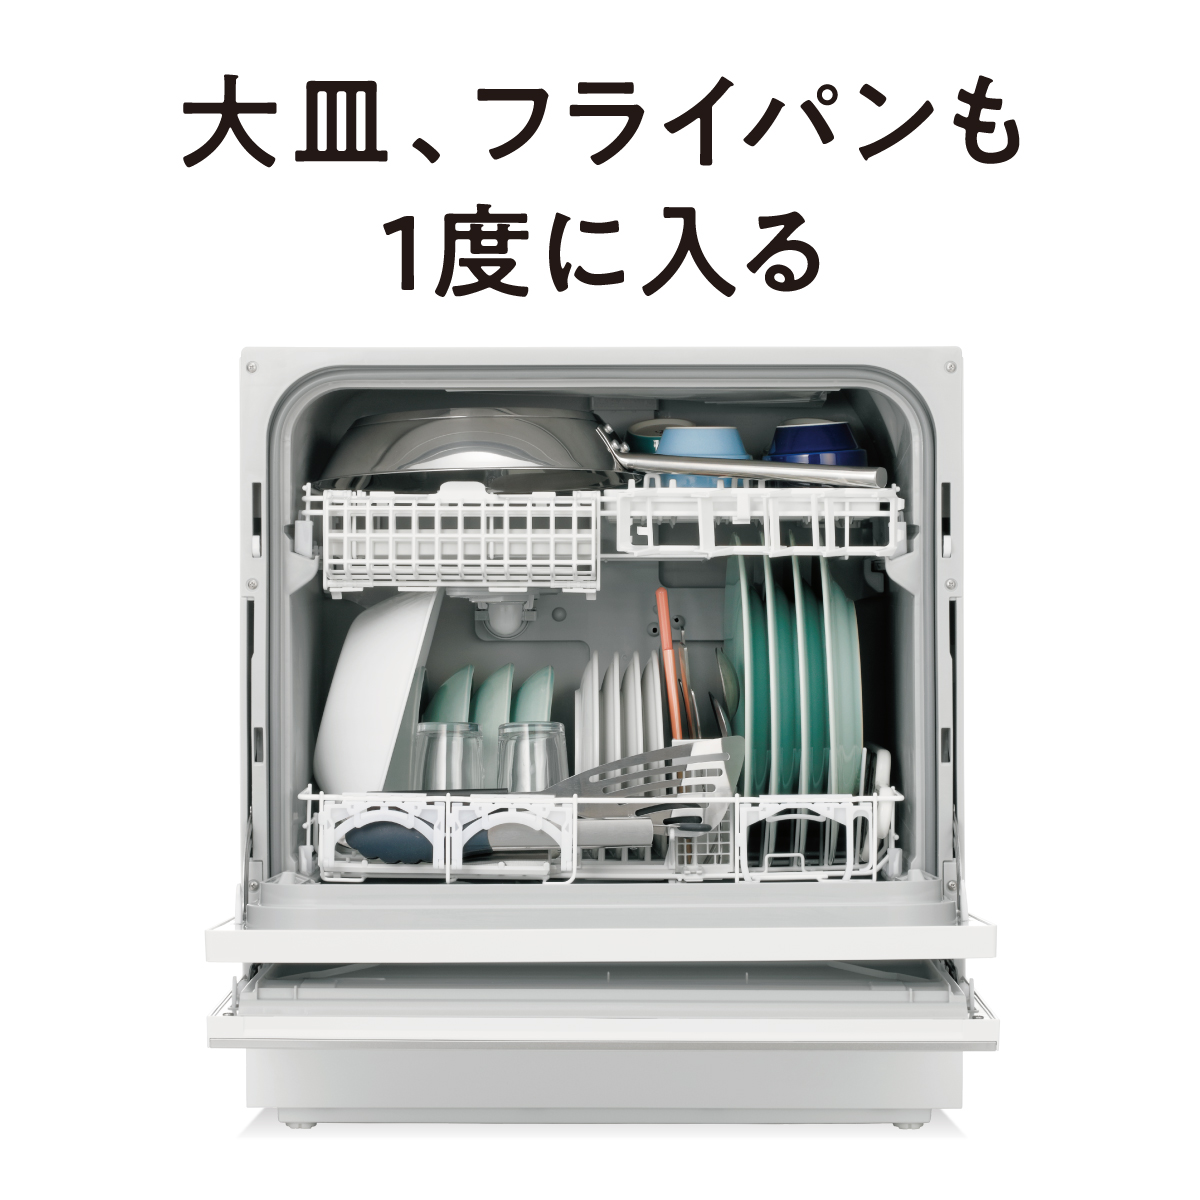 パナソニック Panasonic 食器洗い乾燥機 (食器点数40点) NP-TZ300 